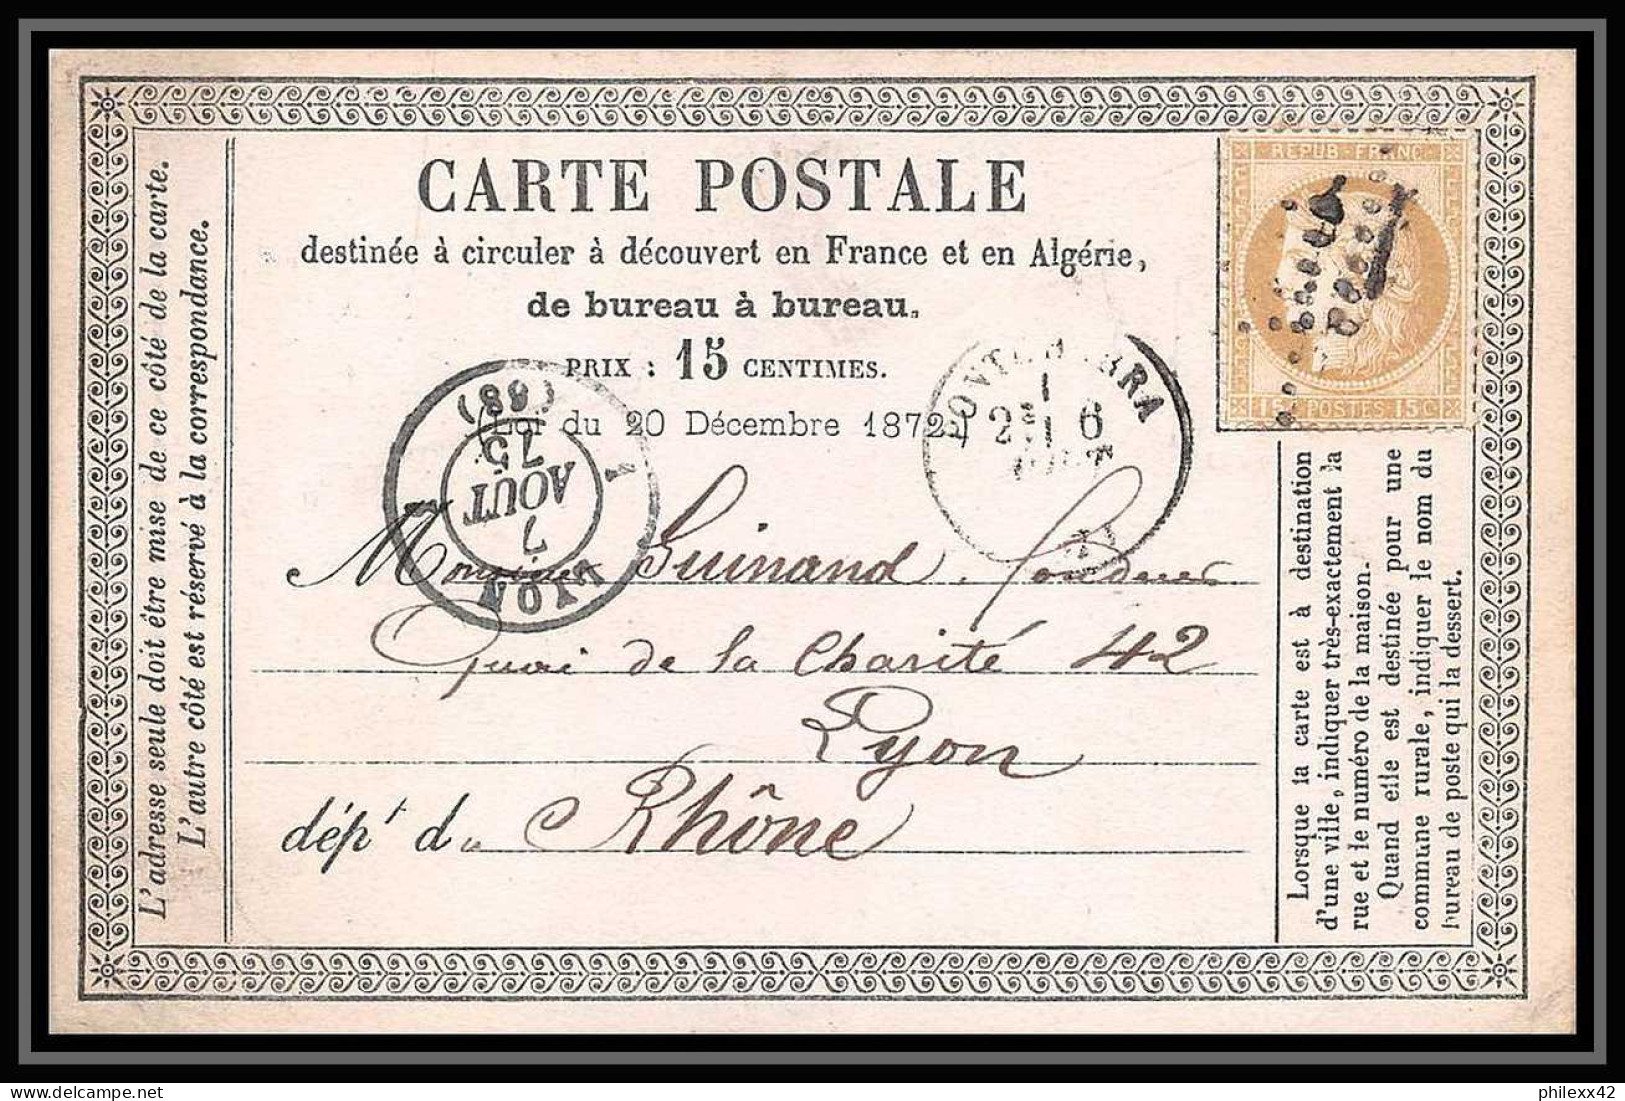 1320 Carte Postale (postcard) Précurseur N°55 GC 1966 Pontcharra IIsère 06/08/75 Cères Pour Lyon Rhone - Precursor Cards